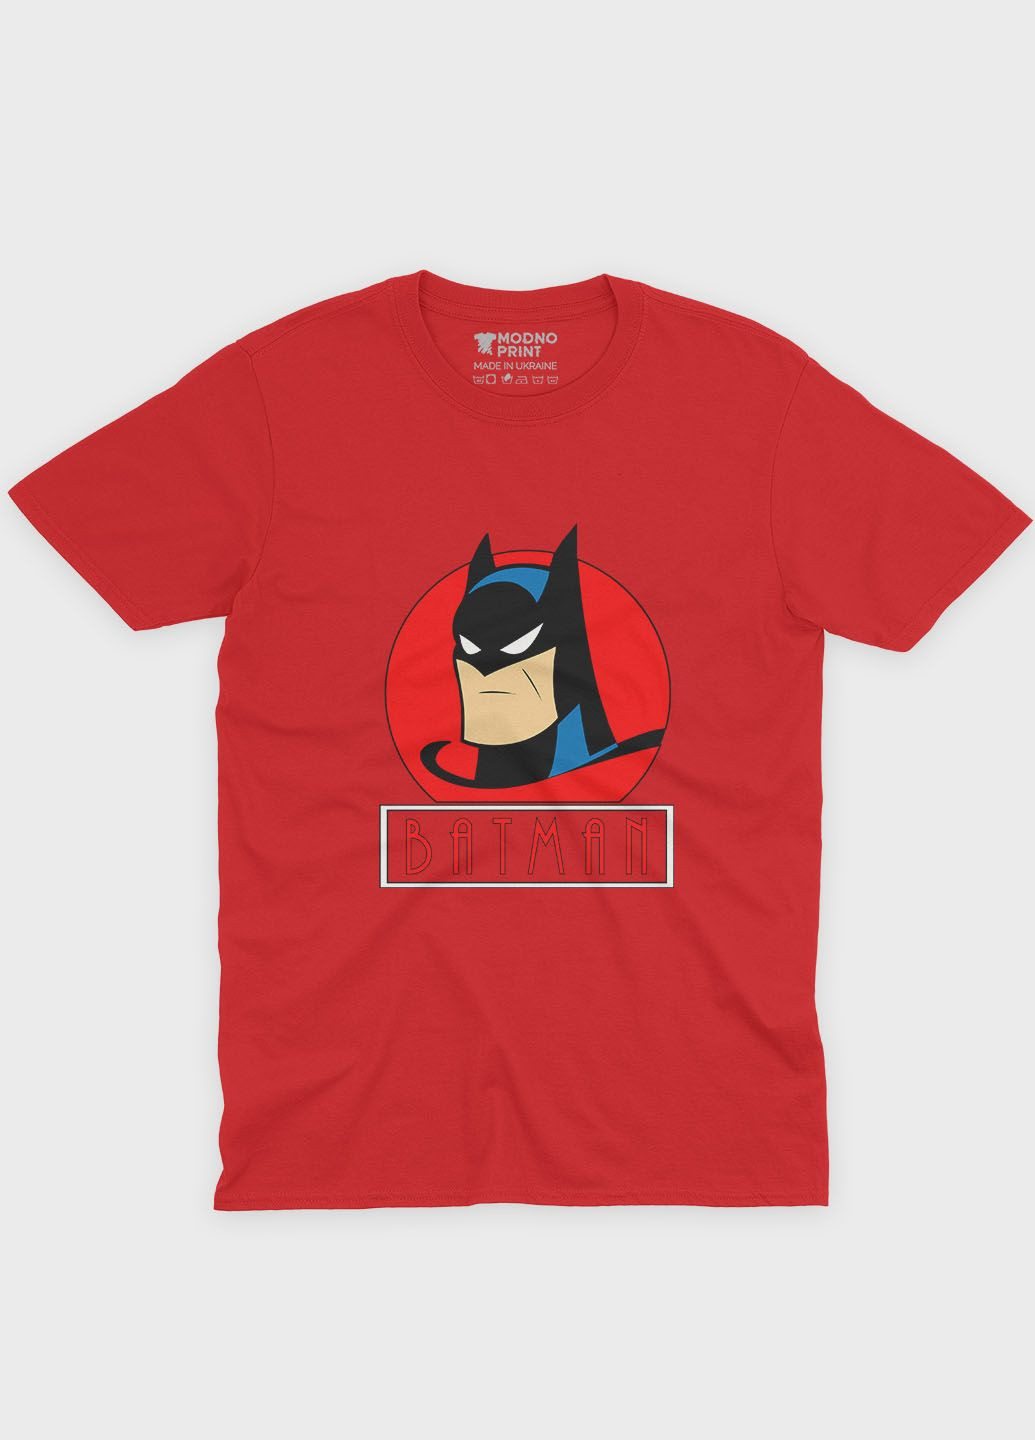 Красная демисезонная футболка для девочки с принтом супергероя - бэтмен (ts001-1-sre-006-003-020-g) Modno